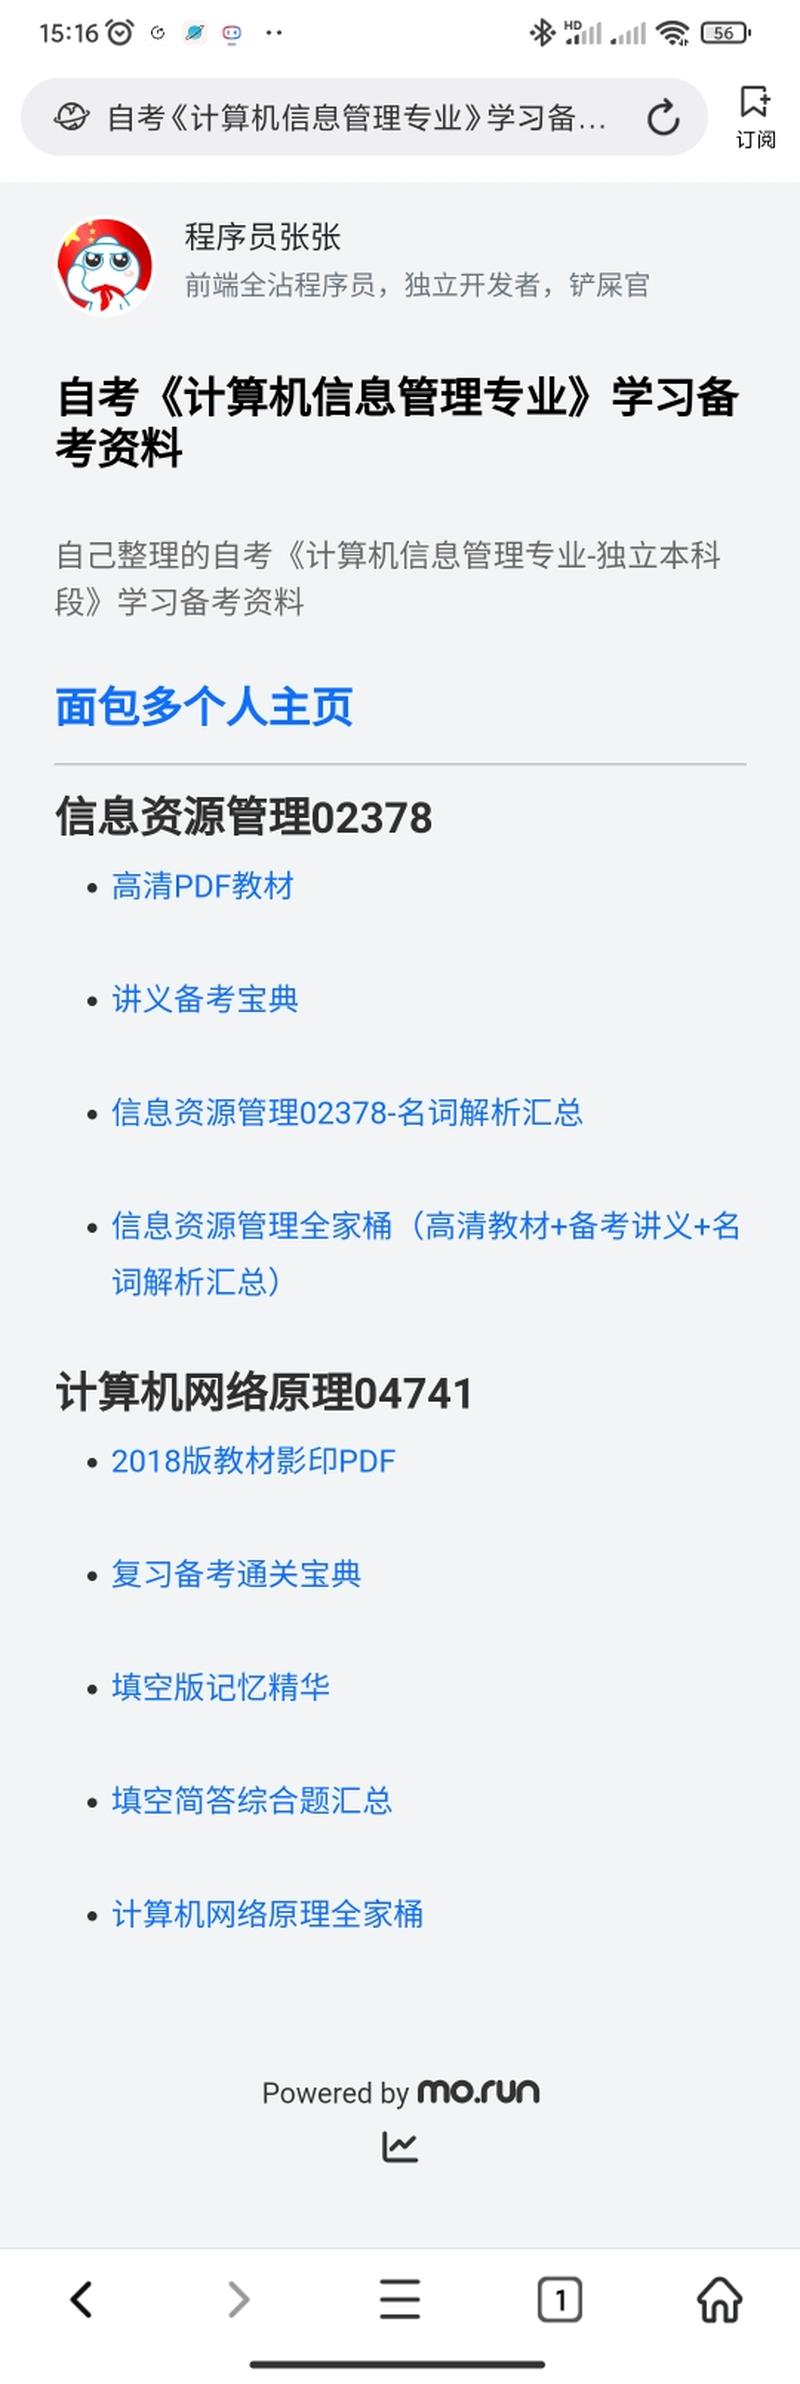 杭州程序员张张于2022-09-21 15:19发布的图片